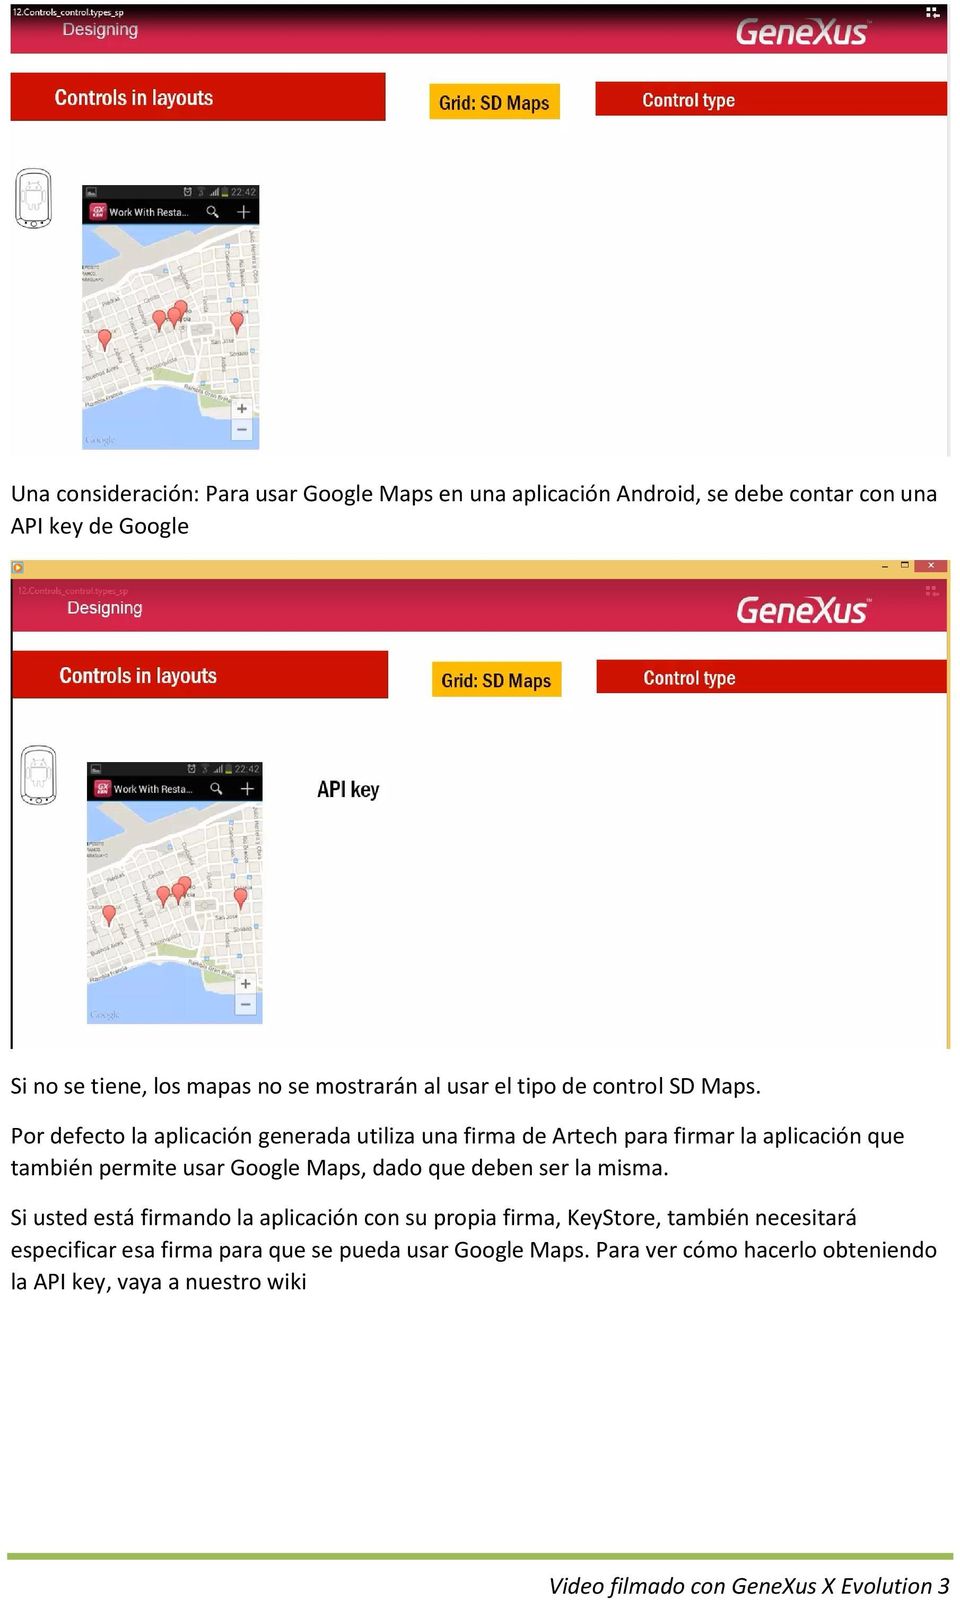 Por defecto la aplicación generada utiliza una firma de Artech para firmar la aplicación que también permite usar Google Maps, dado que